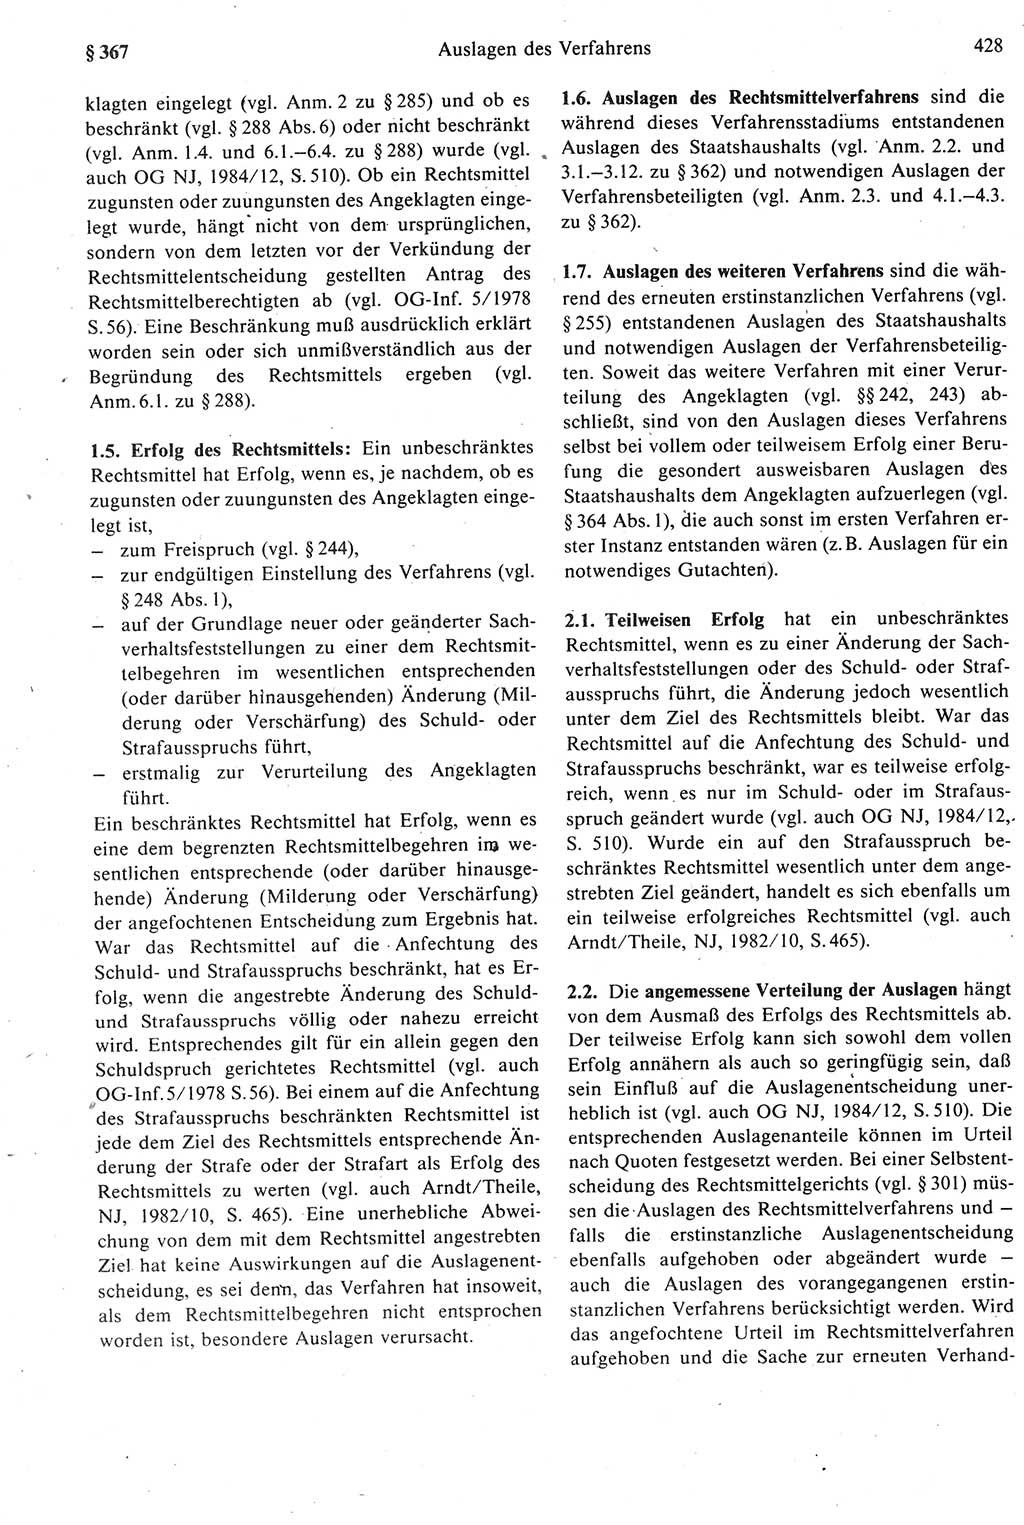 Strafprozeßrecht der DDR [Deutsche Demokratische Republik], Kommentar zur Strafprozeßordnung (StPO) 1987, Seite 428 (Strafprozeßr. DDR Komm. StPO 1987, S. 428)